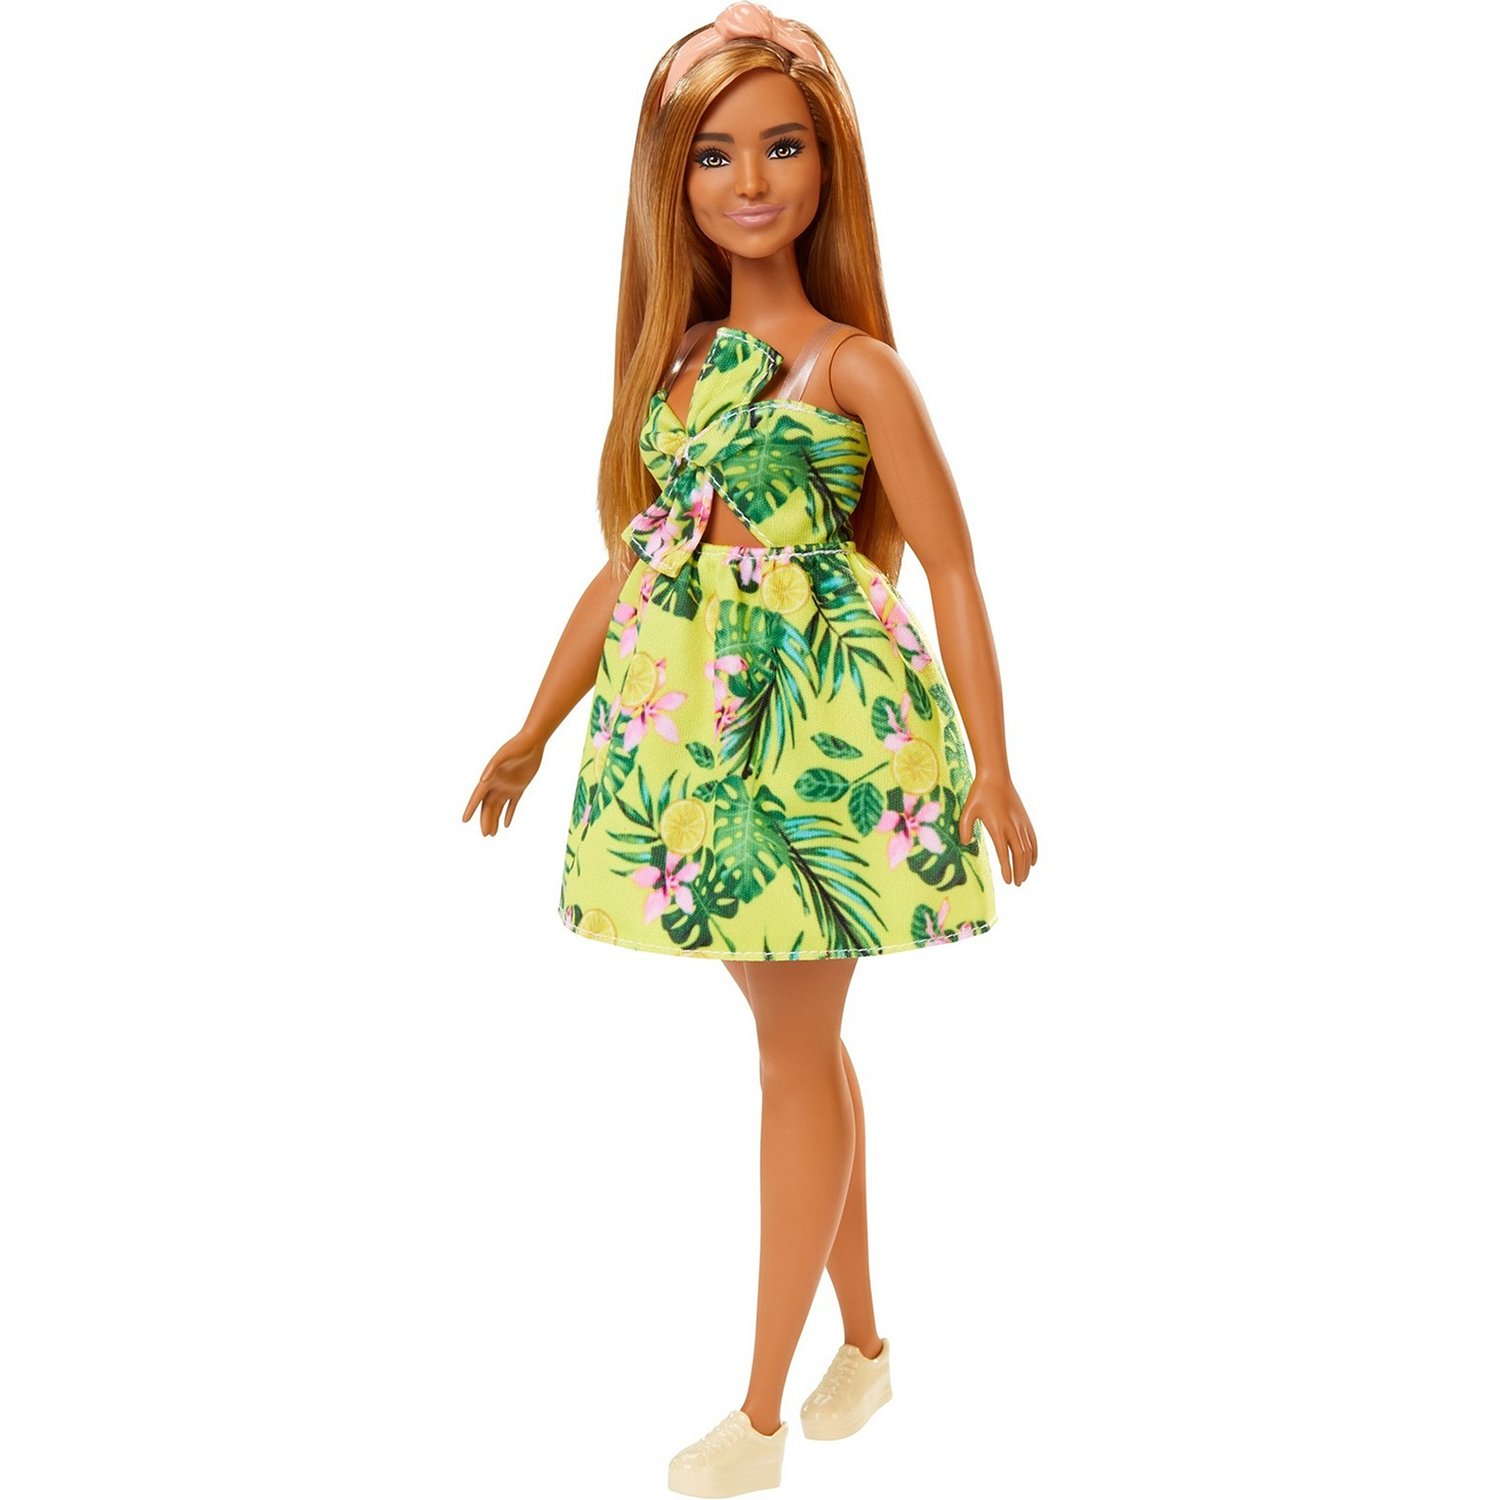 Кукла Barbie Игра с модой Летнее настроение, FXL59